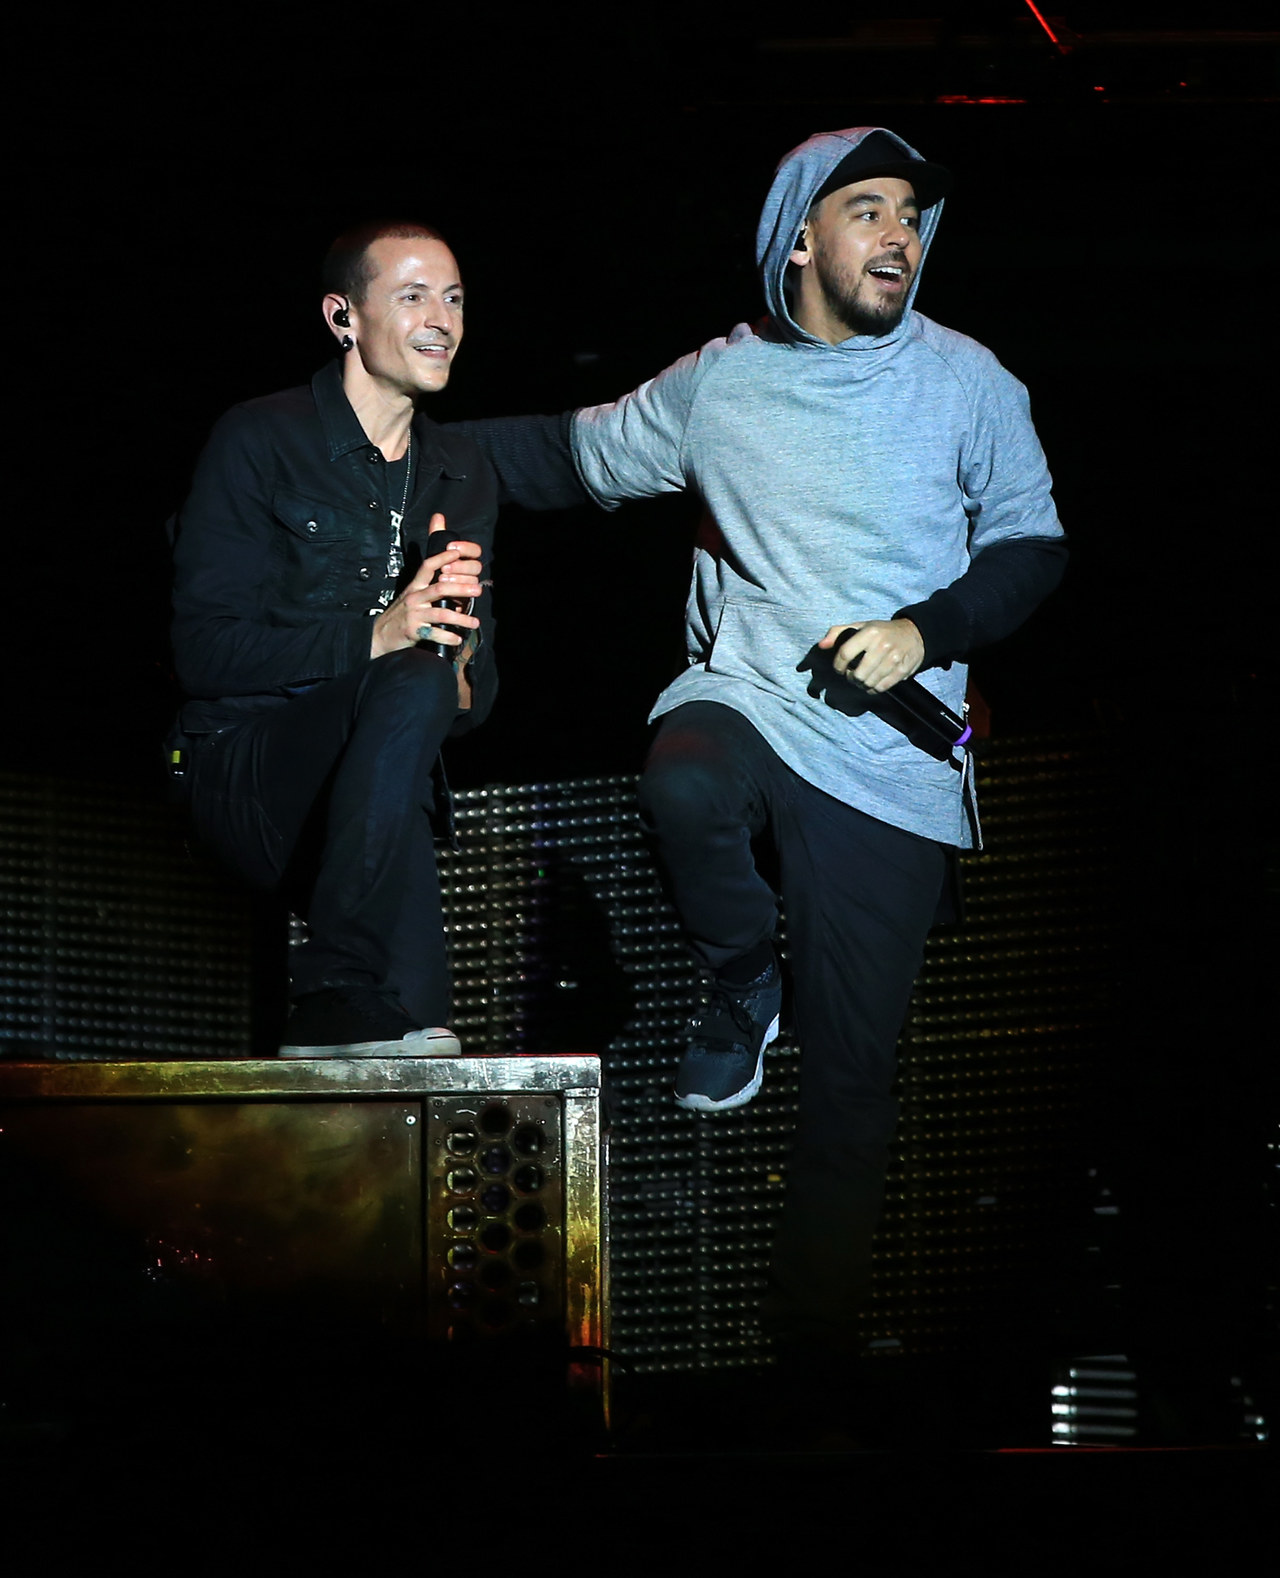 Linkin Park Piec Miesiecy Po Smierci Chestera Benningtona Poczatek Nowej Historii Muzyka W Interia Pl